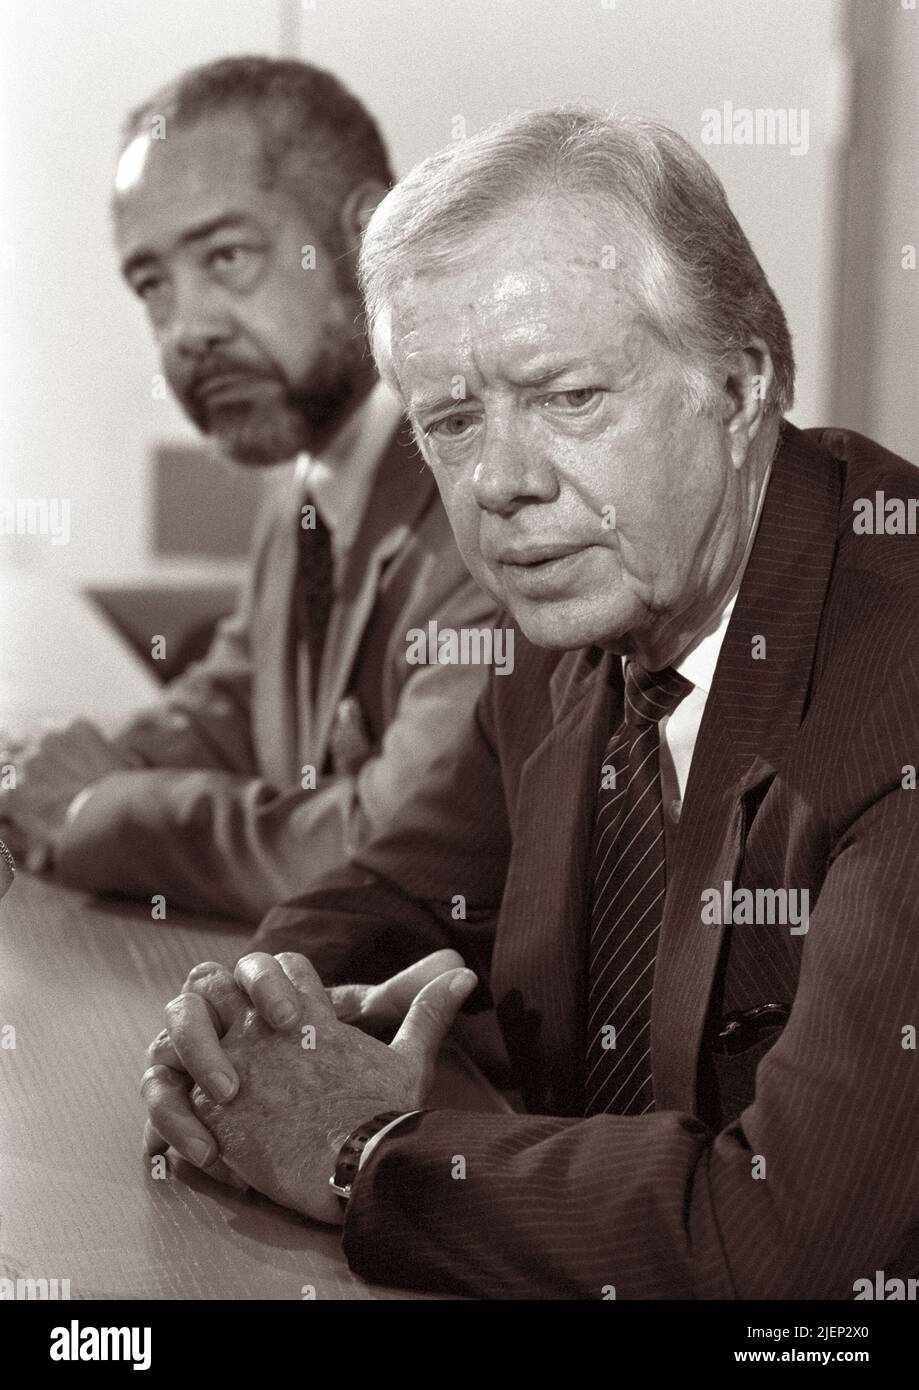 El ex-presidente de los Estados Unidos Jimmy Carter en una conferencia de prensa en los Países Bajos en el Aeropuerto Schiphol de Ámsterdam el 6 de octubre de 1988. Foto de stock